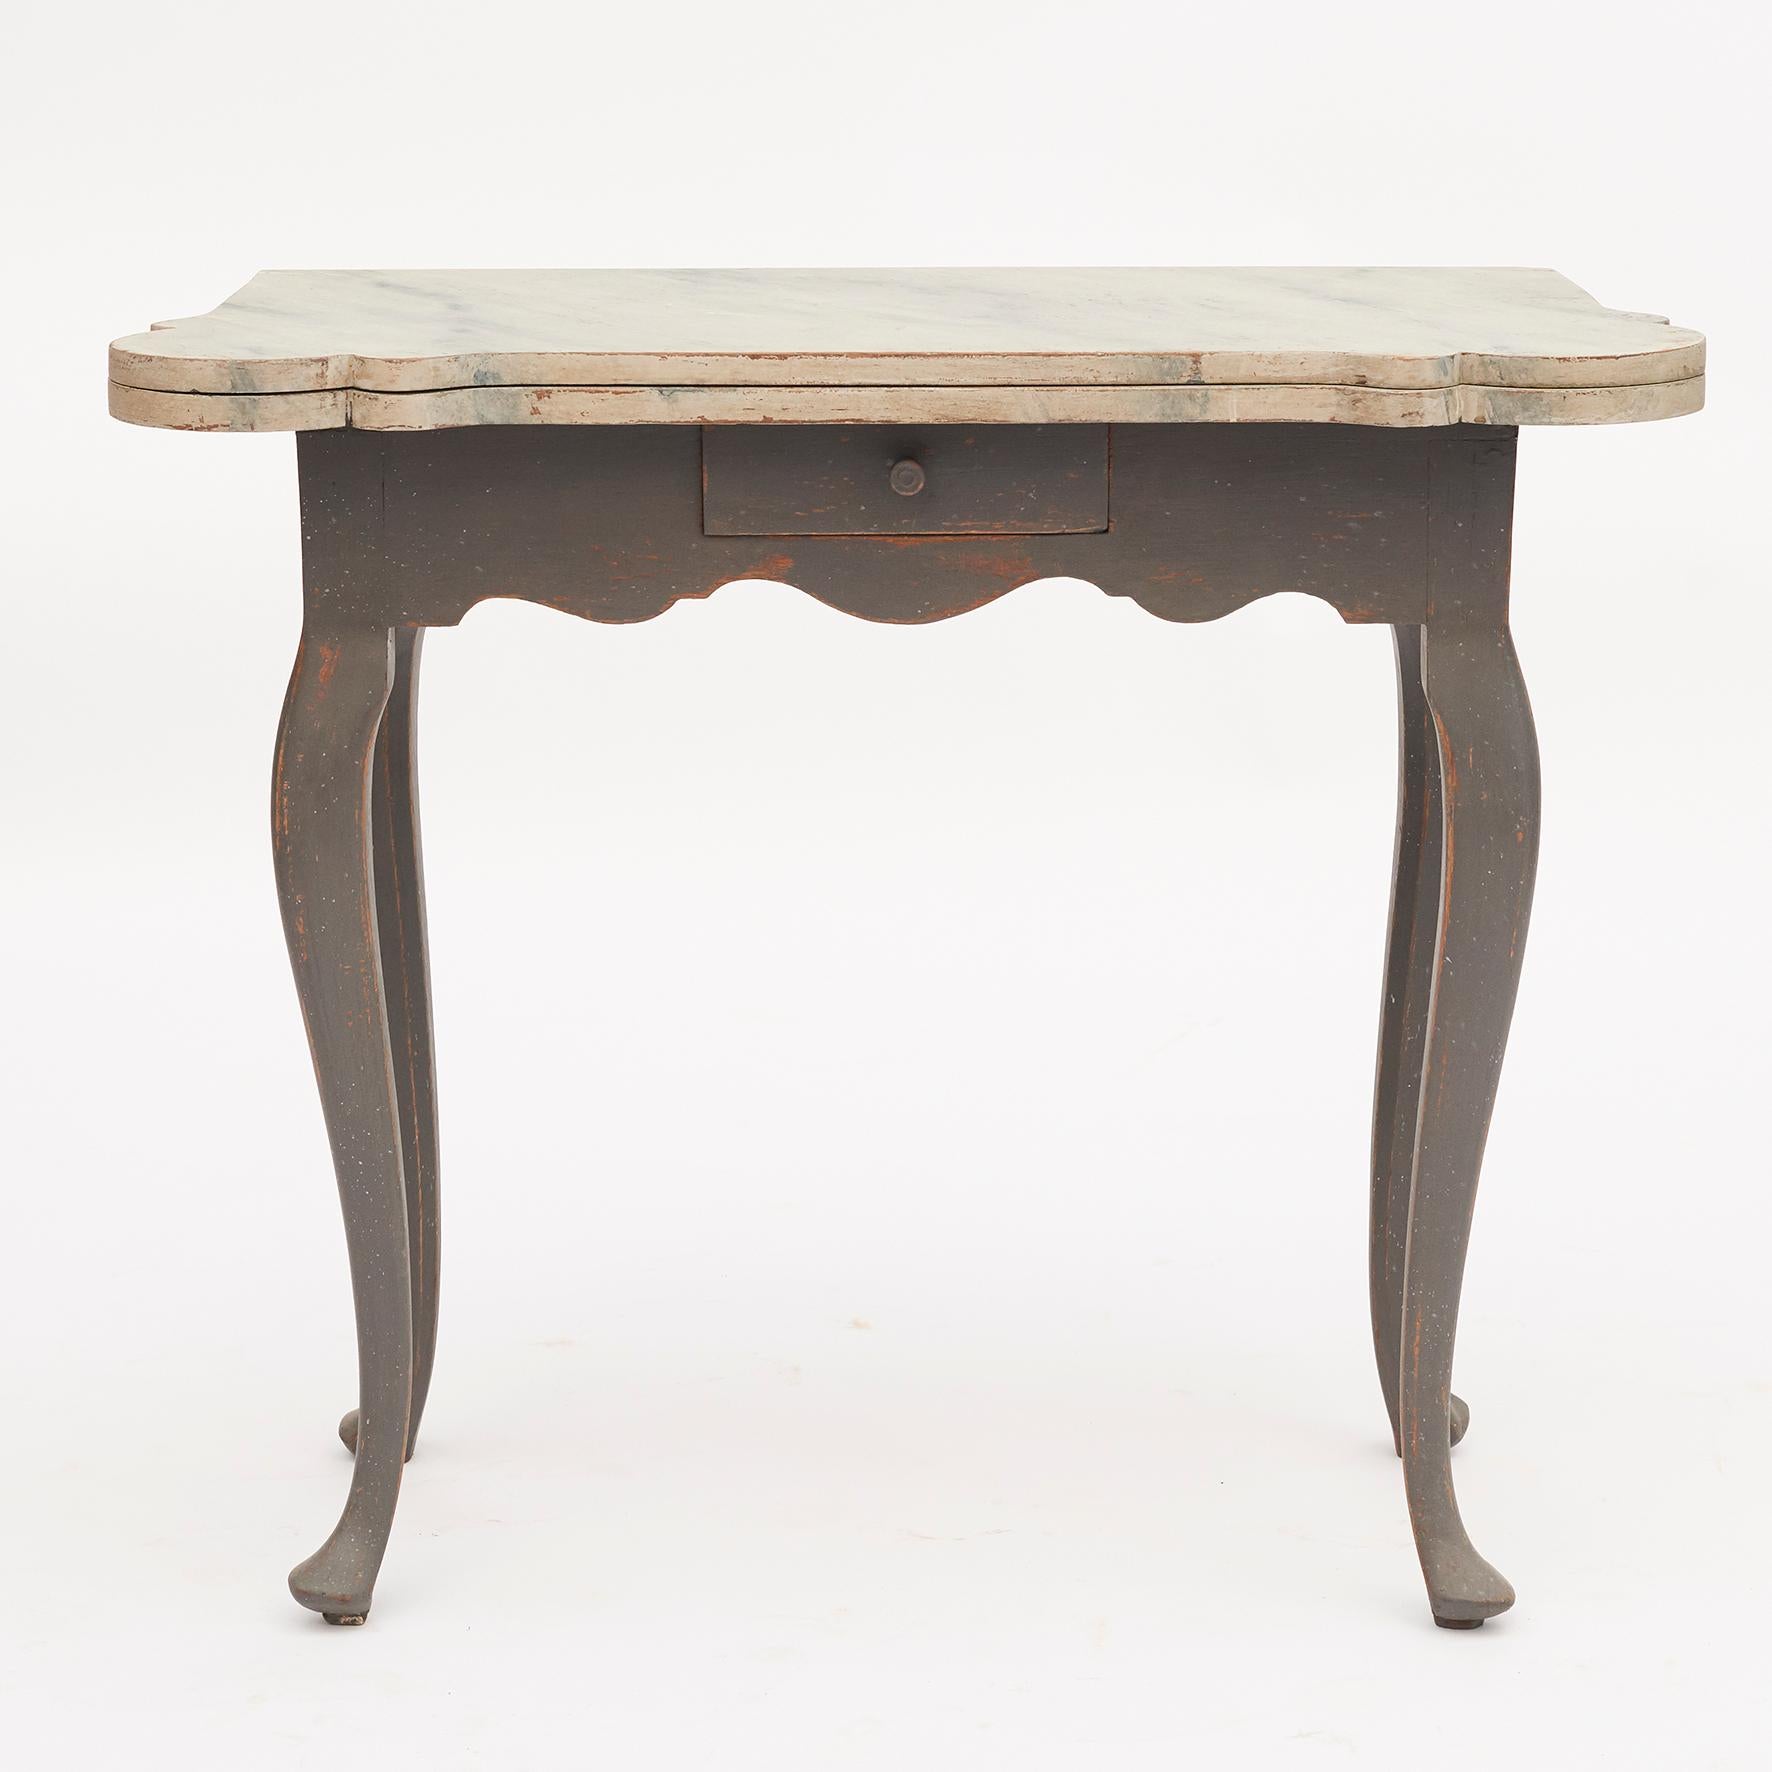 Dänischer Rokoko-Konsolen- und Spieltisch aus dem 18. Jahrhundert. Der Deckel lässt sich anheben und gibt den Blick auf das Innere mit Kerzenständern und Perlenketten frei.
Tisch von rechteckiger Form, wenn er geschlossen ist, mit vier